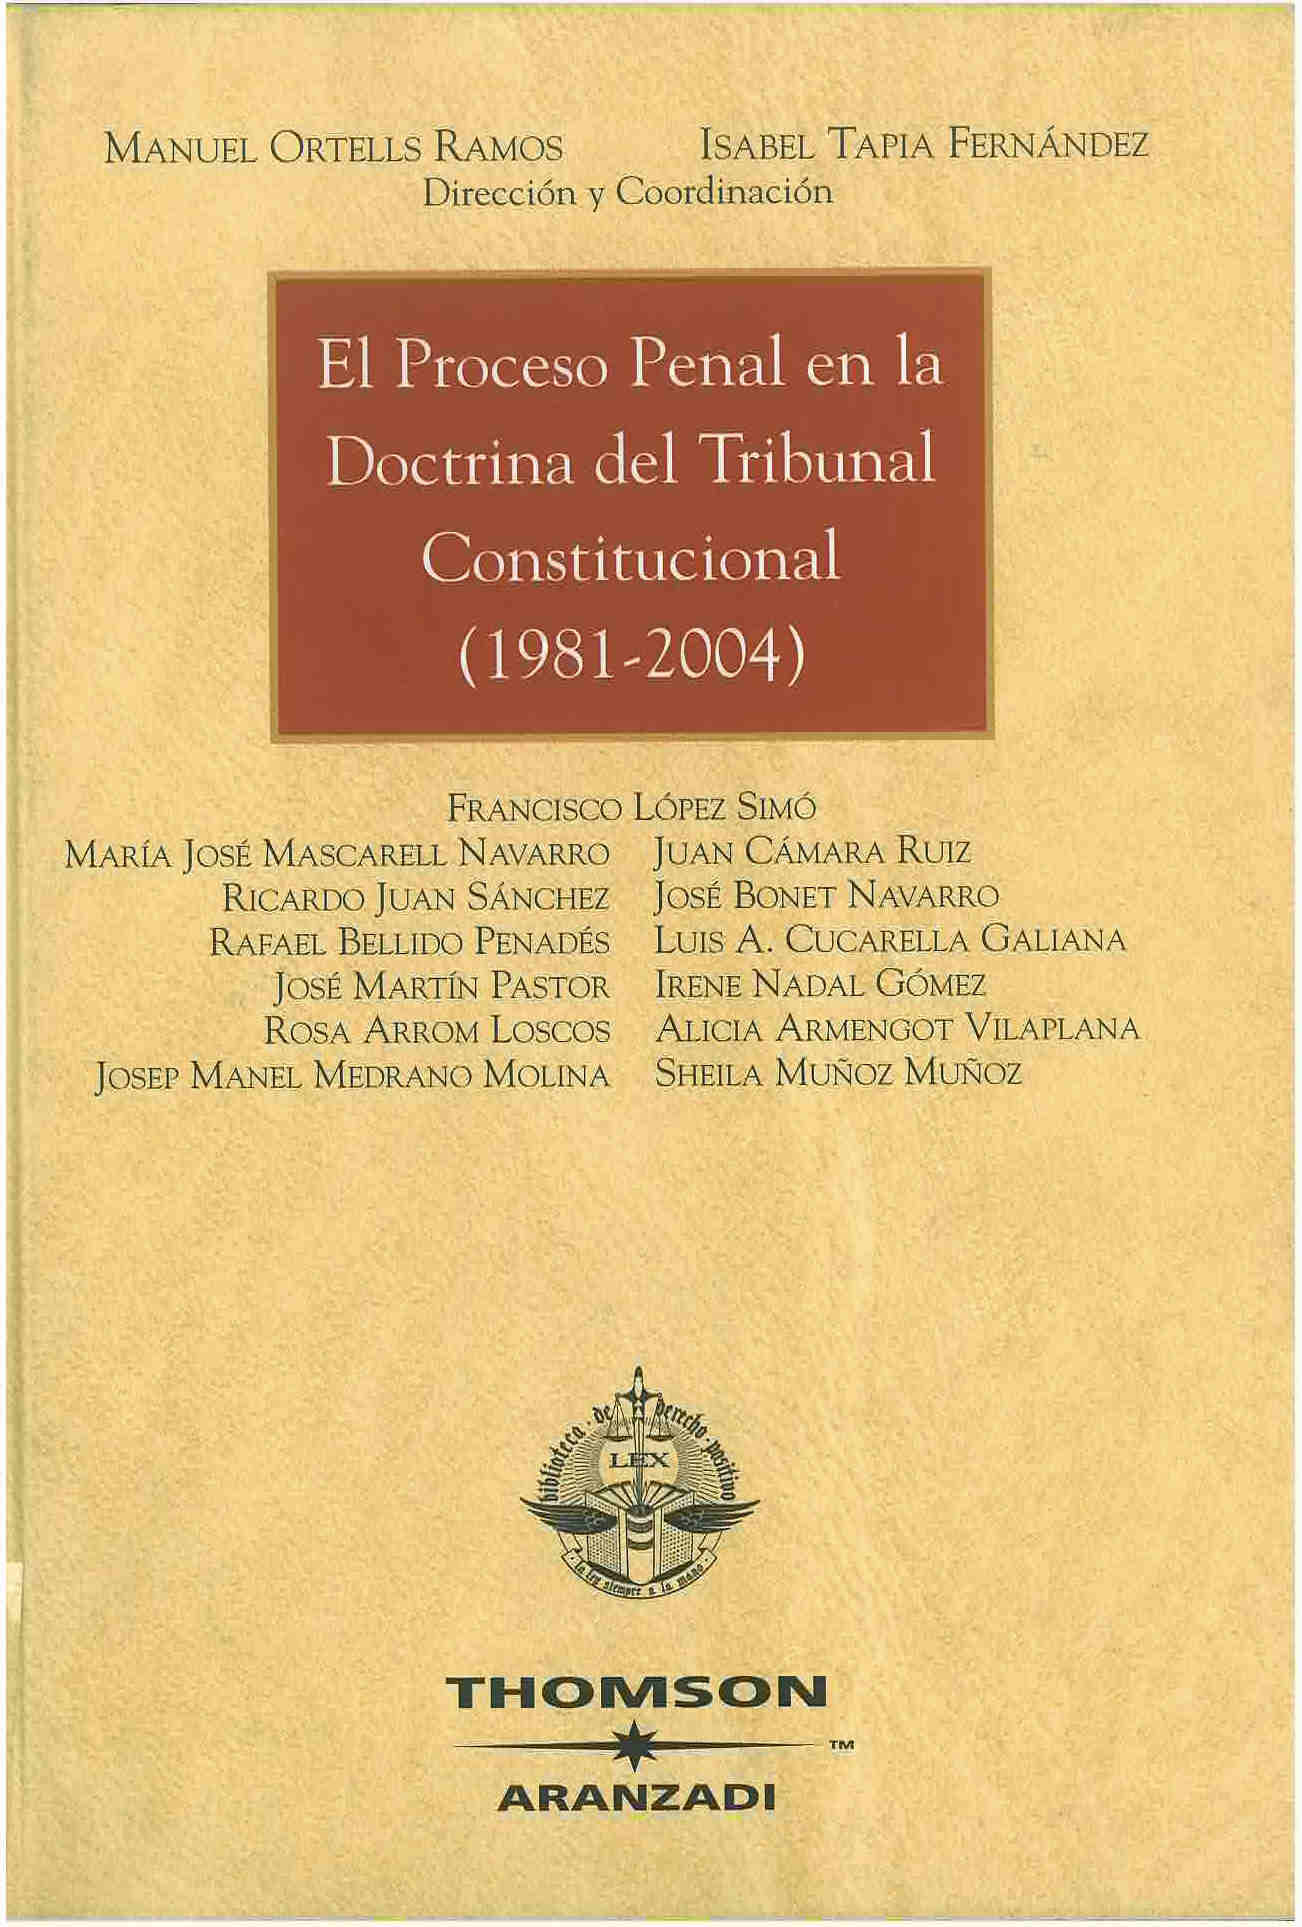 El proceso penal en la doctrina del tribunal constitucional : 1981-2004